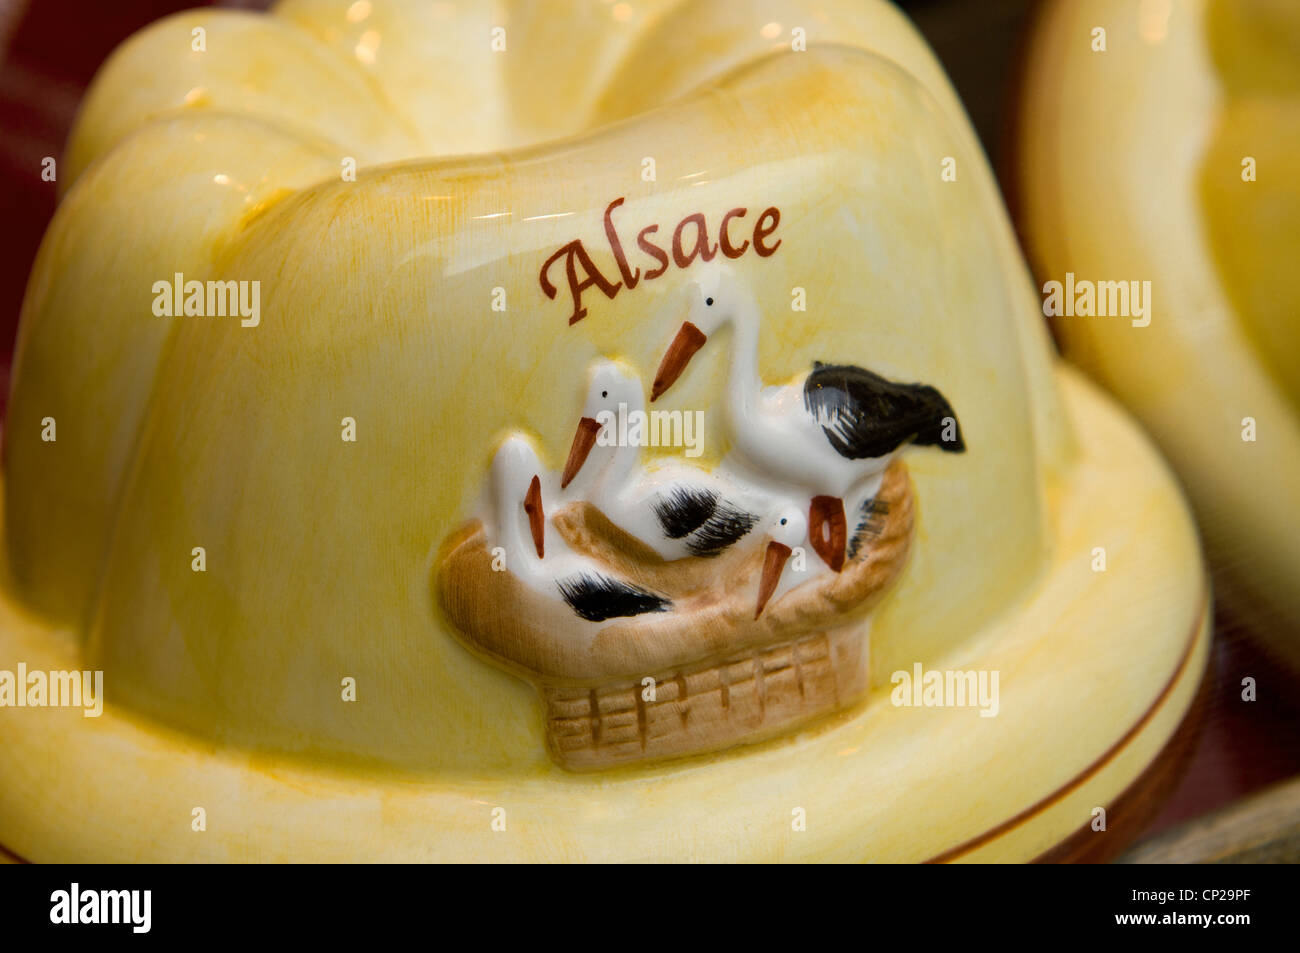 Moule à cake en céramique pour souvenir alsacien traditionnel gâteau  Kougelhopf sur l'affichage à vendre Alsace France Photo Stock - Alamy